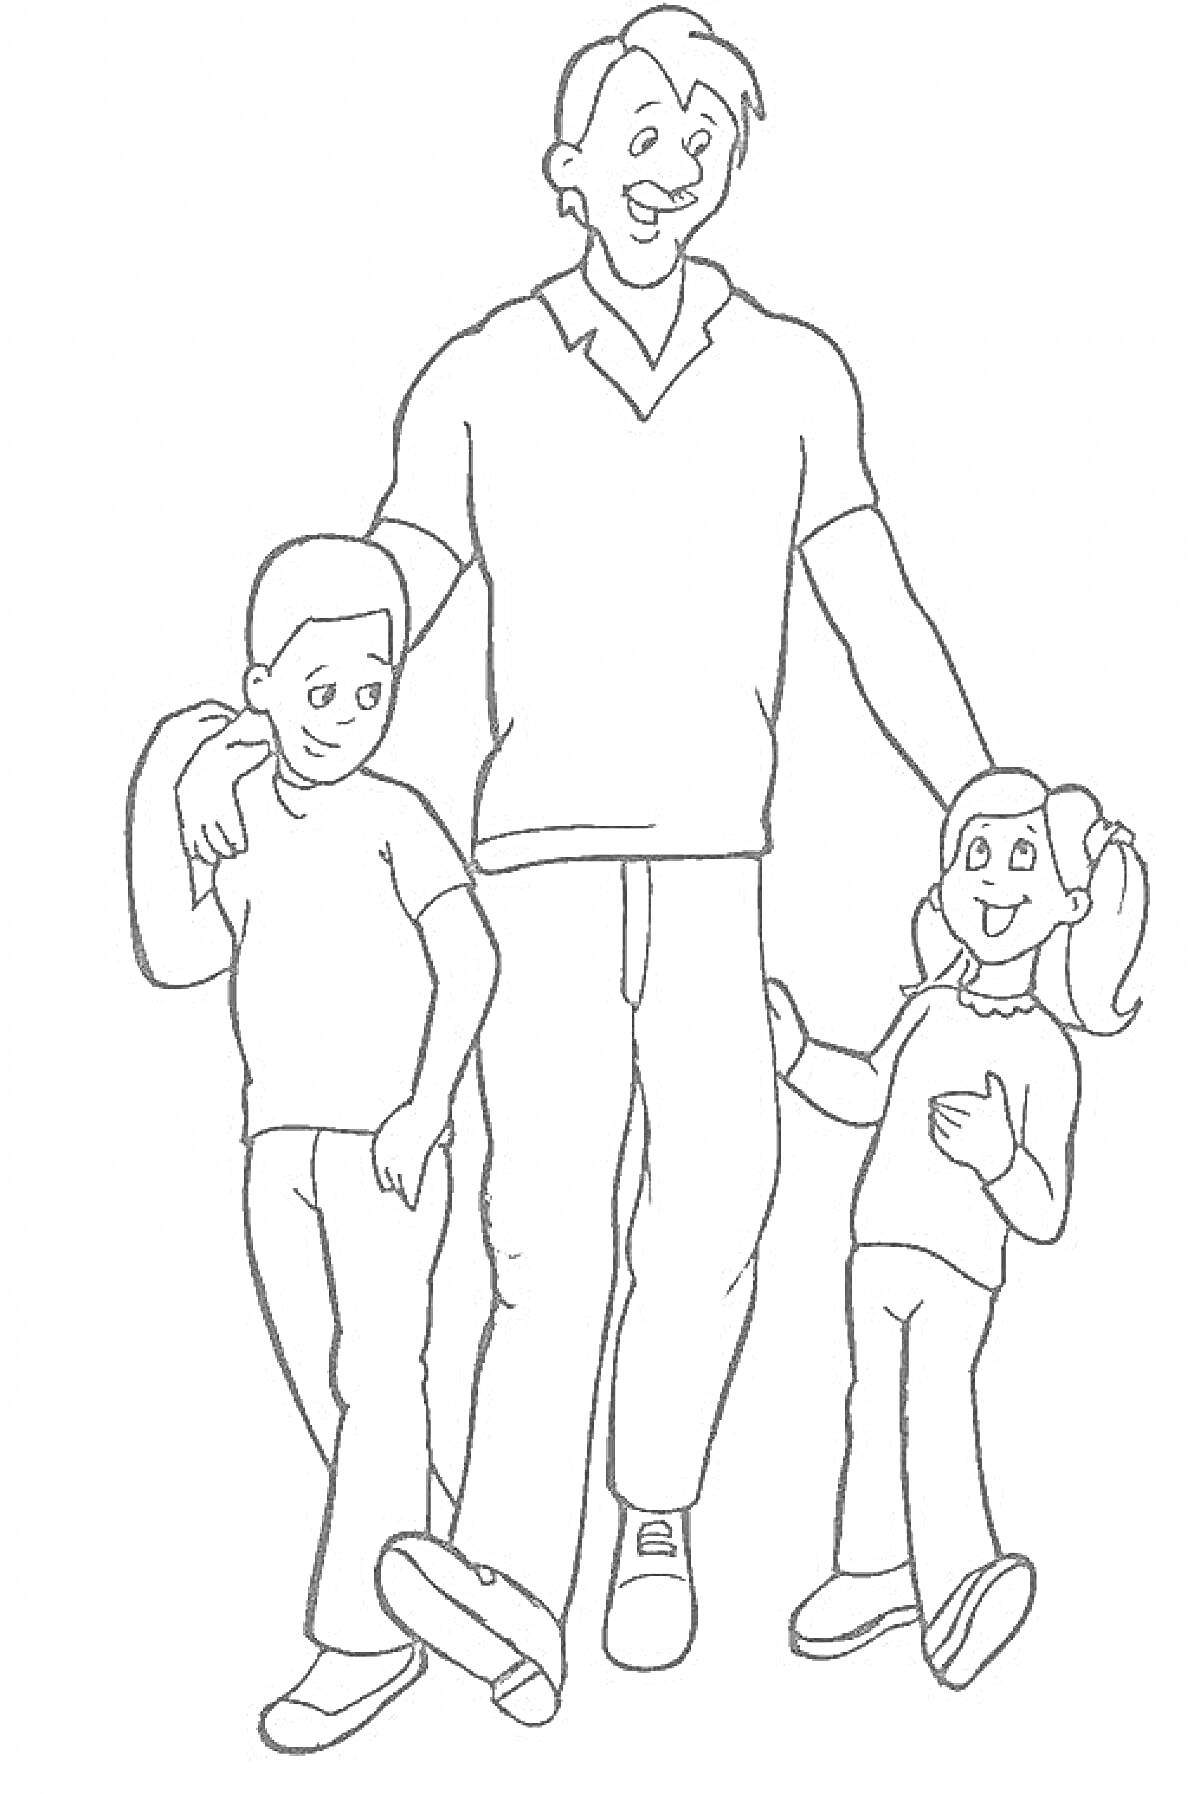 Раскраска Папа с двумя детьми, руки на плечах детей, ребенок слева держит папу за руку, ребенок справа держит папу за руку